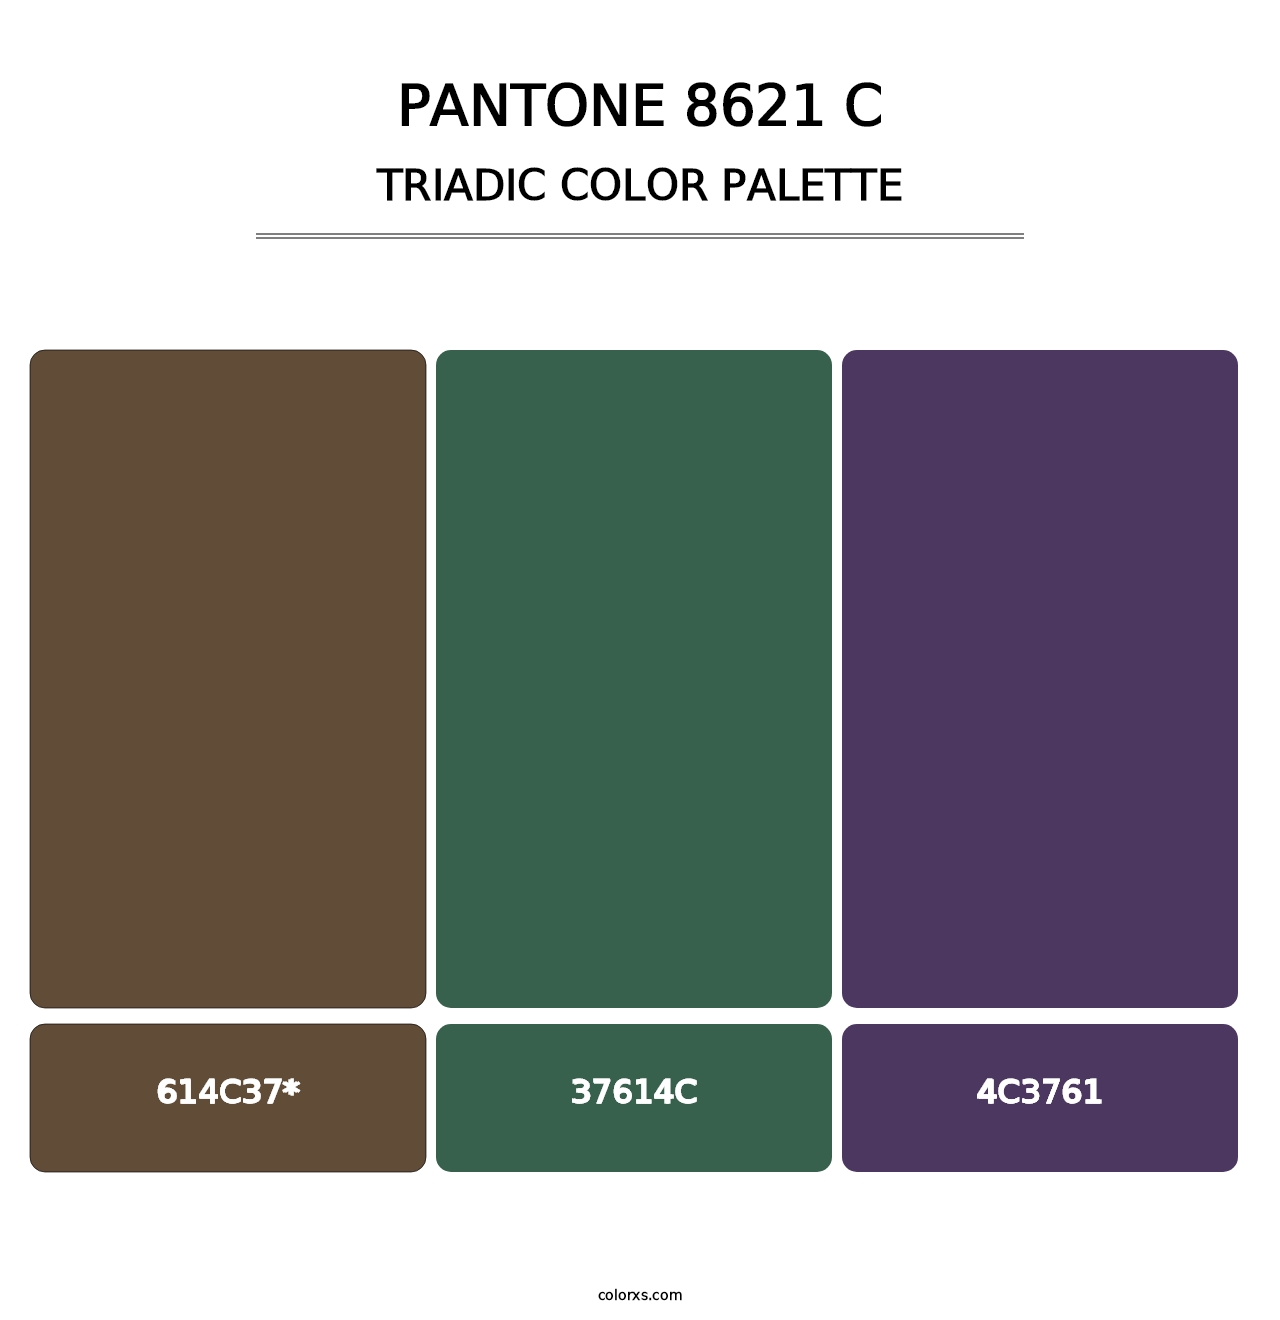 PANTONE 8621 C - Triadic Color Palette